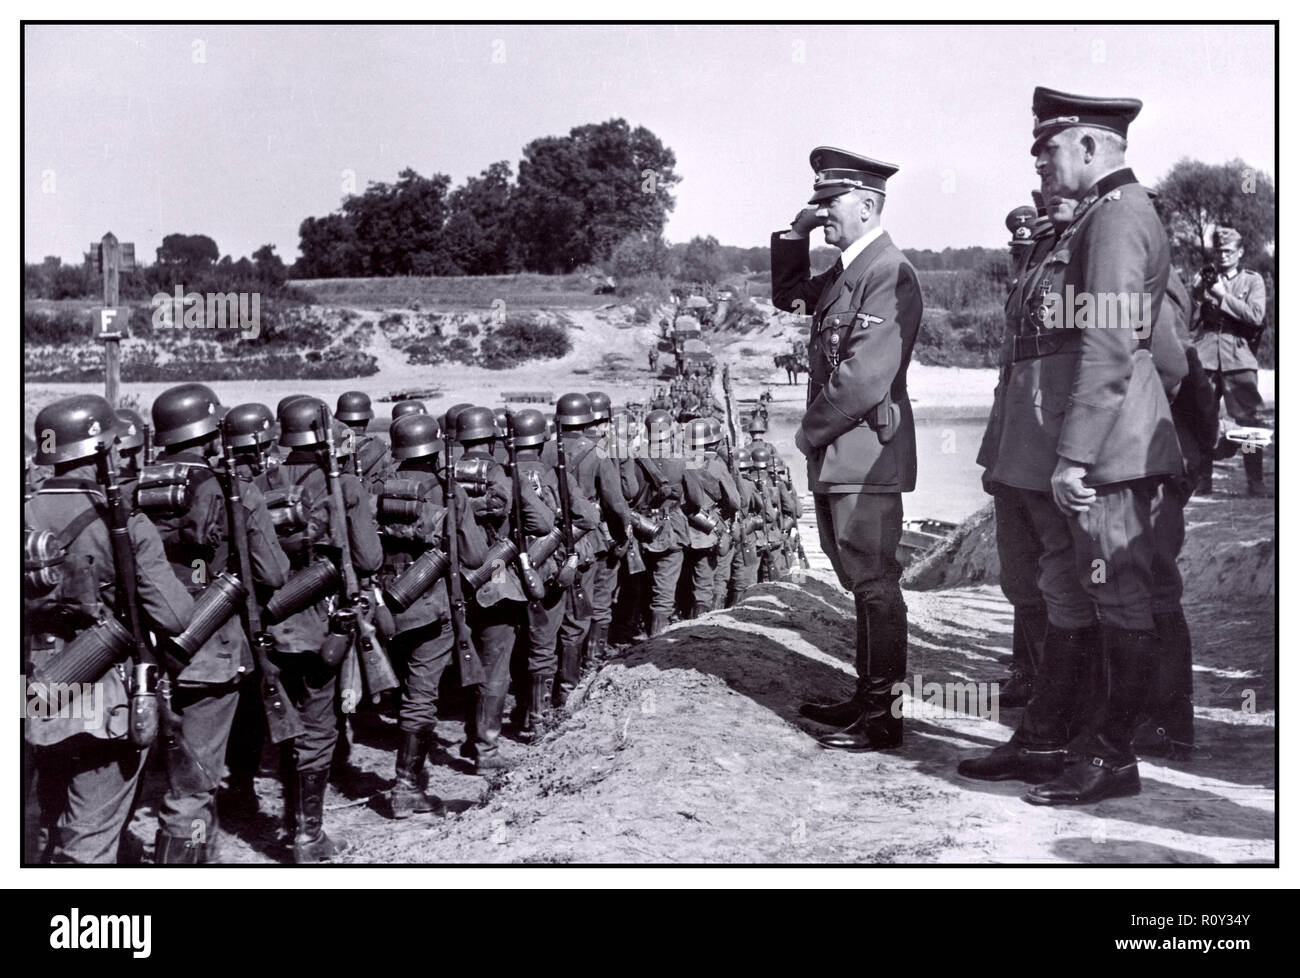 INVASION der Nazis in Polen Adolf Hitler begrüßt Truppen marschieren, wie sie nach vorn drücken Września Polen 10. September 1939 Überfall auf Polen, der 2.Weltkrieg 2.Weltkrieg 1939-09 ausgefällt einzudringen Stockfoto